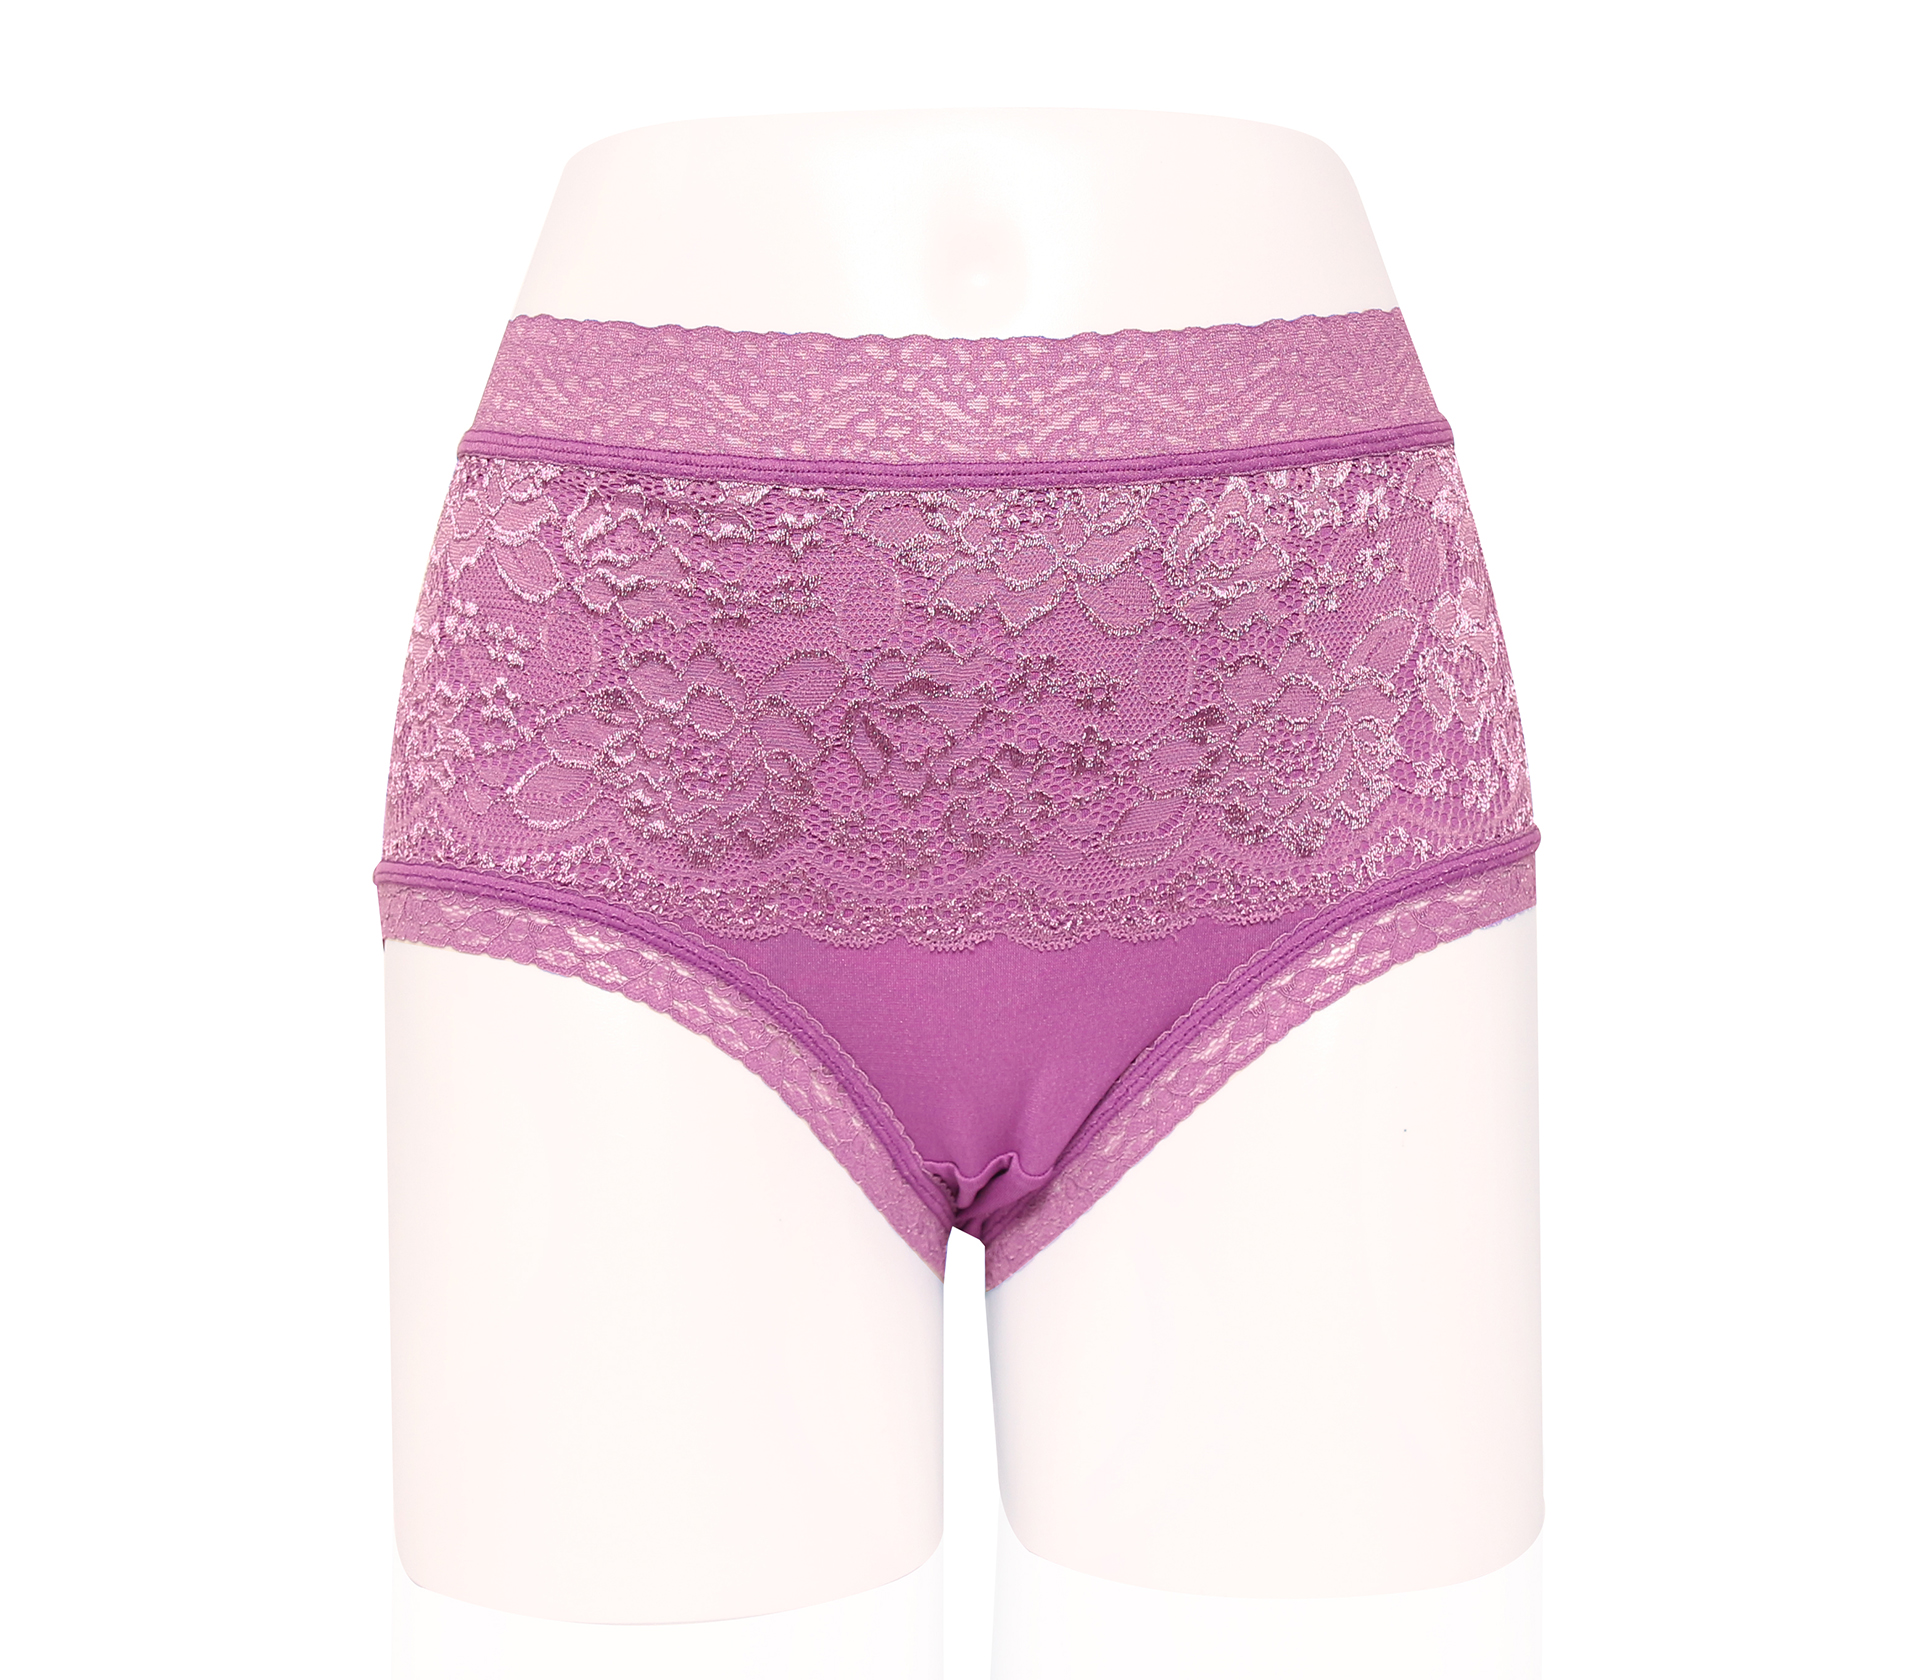 闕蘭絹頂級碘紗蠶絲內褲- M8806 (紫色)